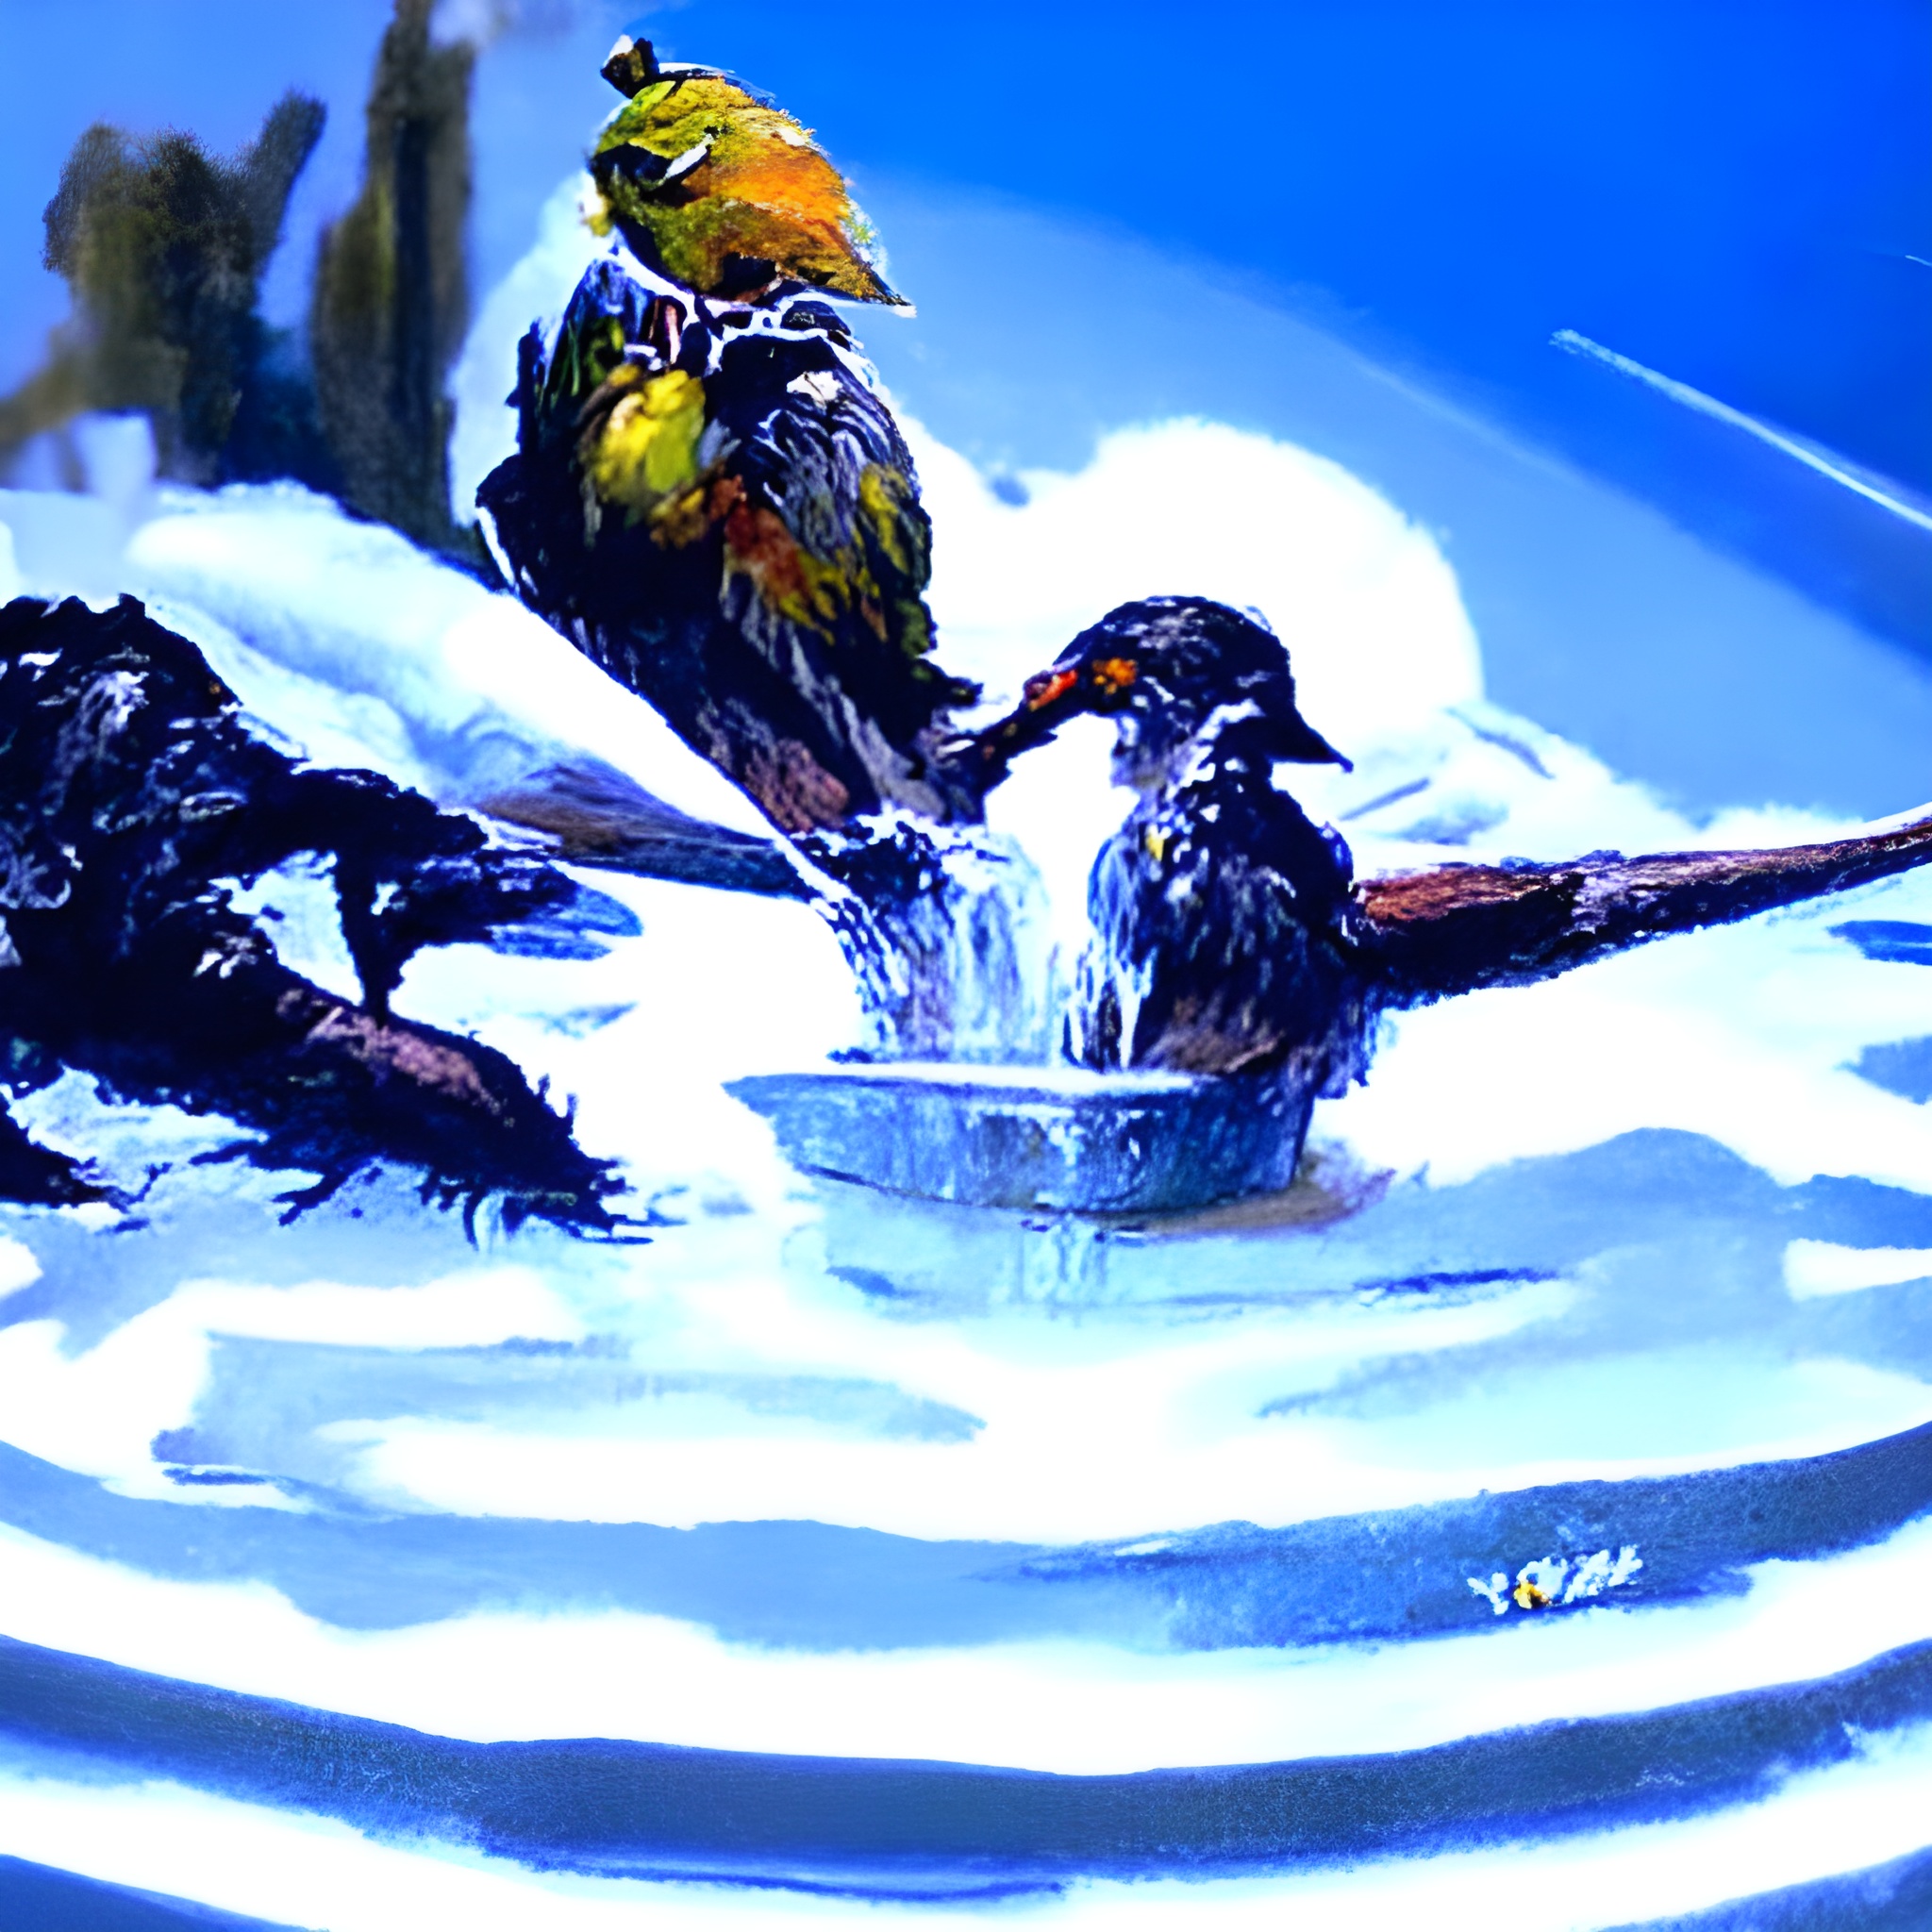 10021 birds taking a bath